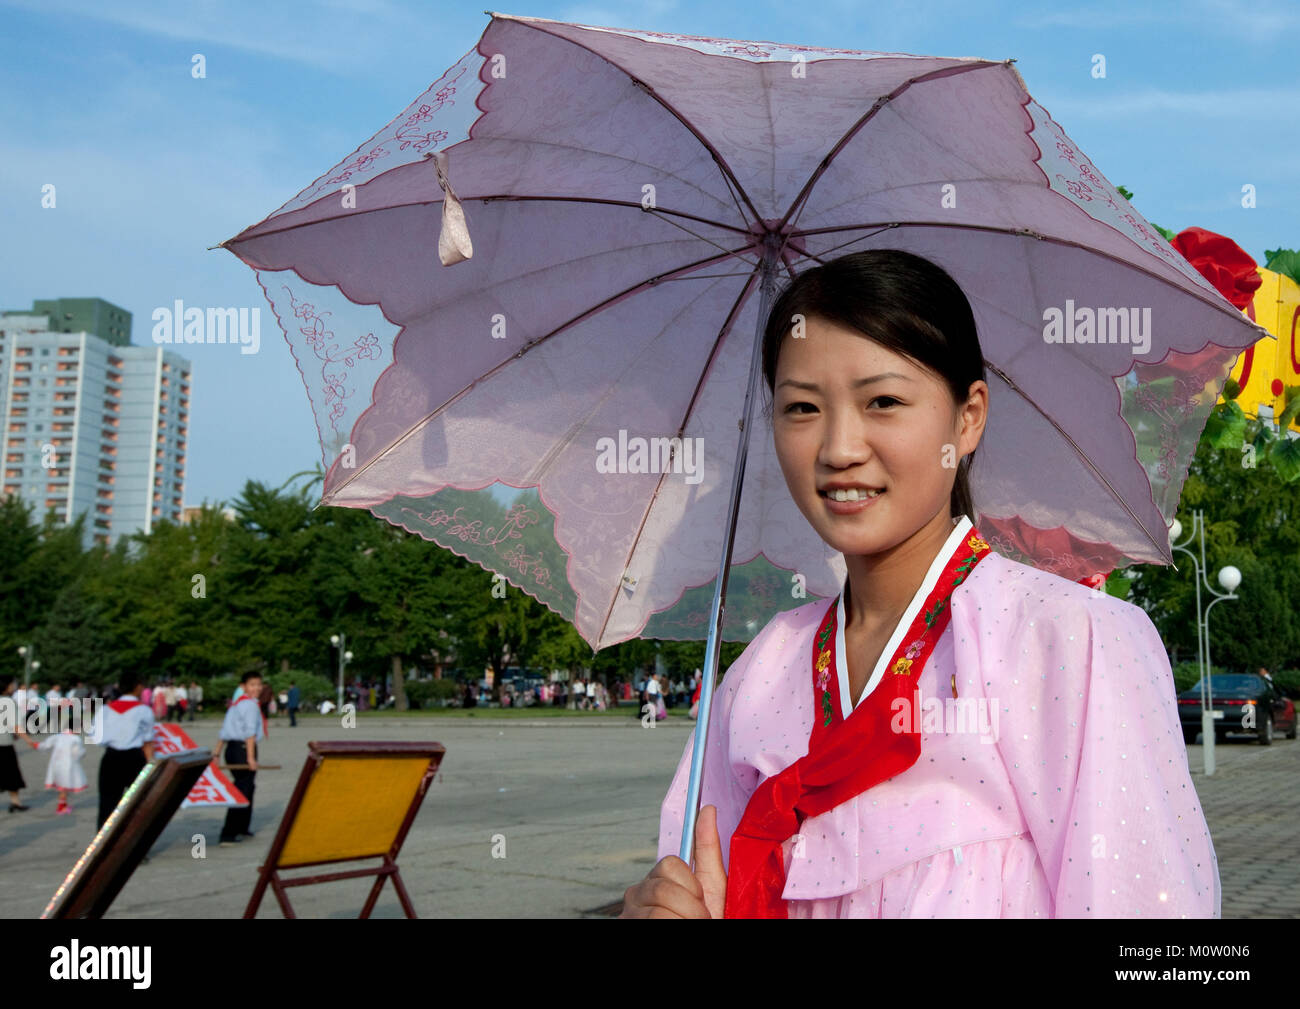 Как называют девушку в японии. Хфото Лаффорга Северная Корея. Женщины Кореи. Северокорейские женщины. КНДР женщины.